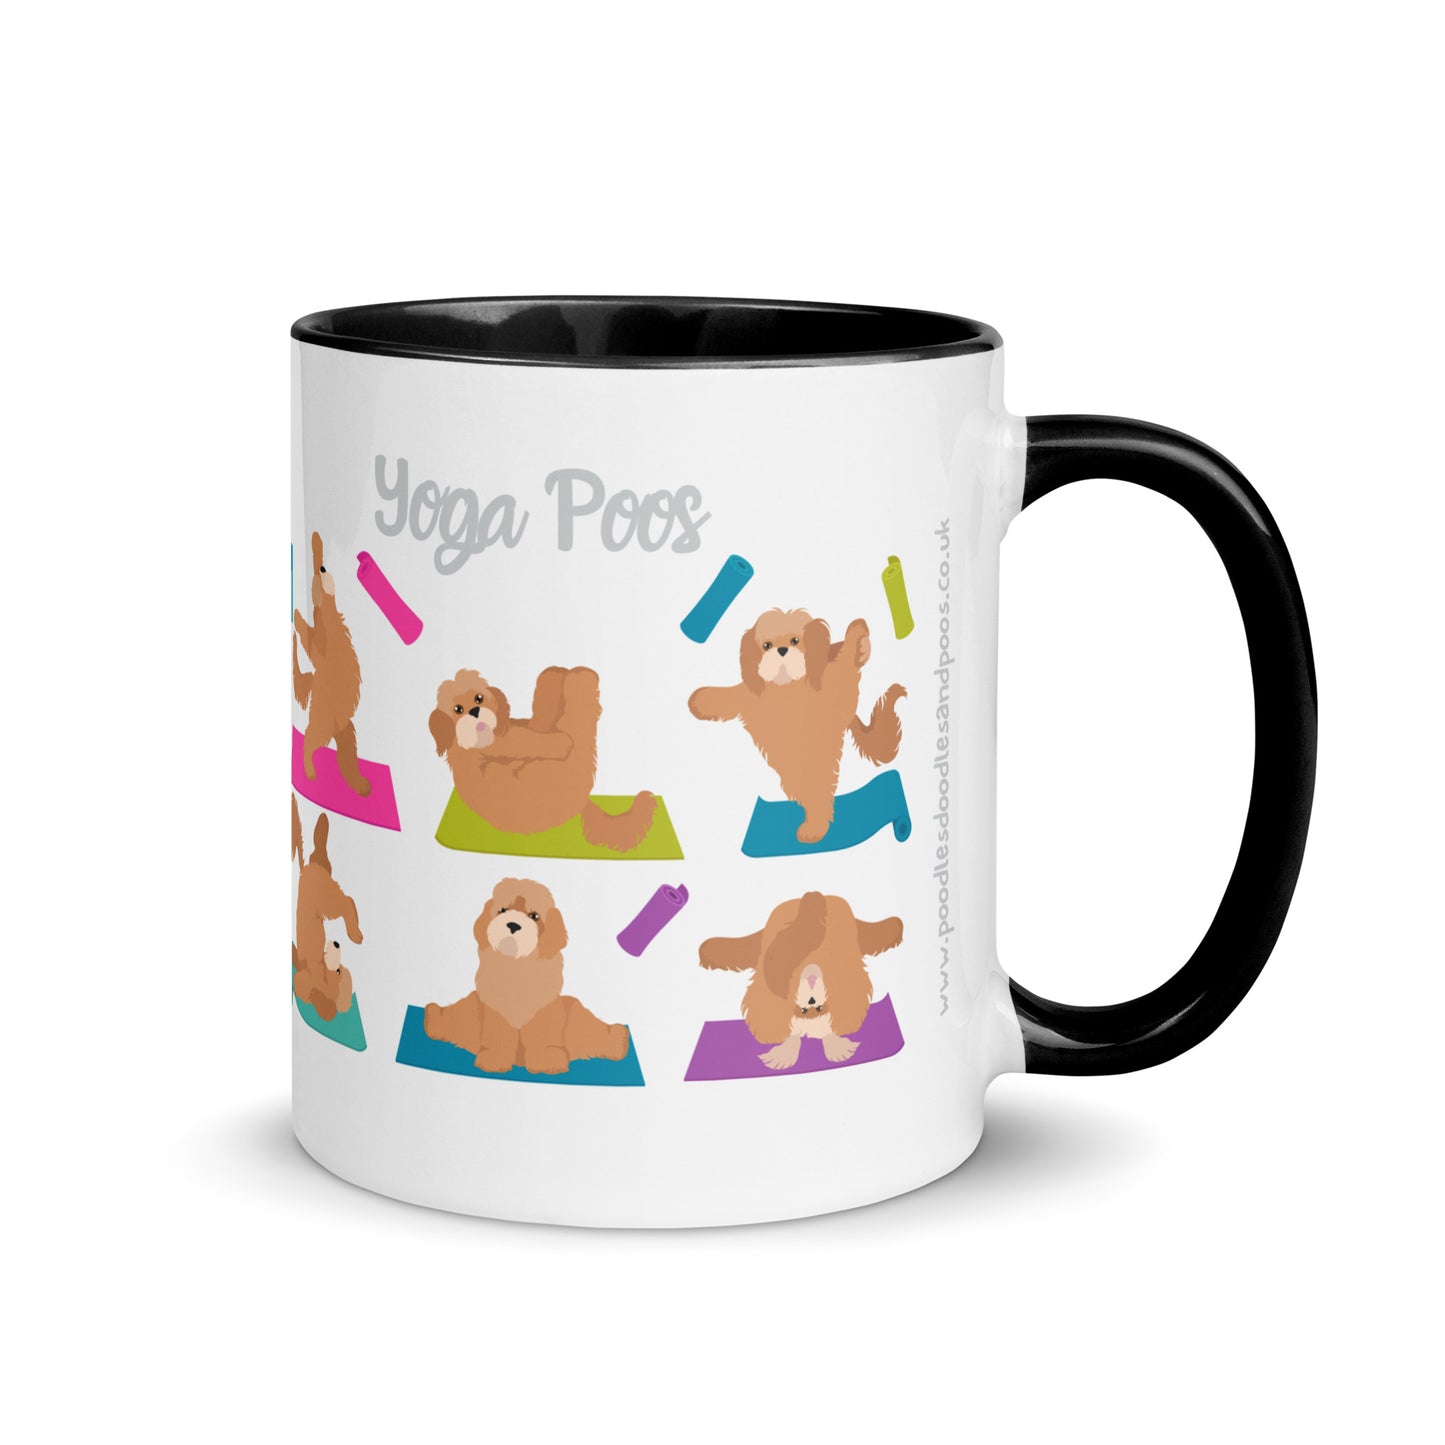 "Yoga Poos" mug